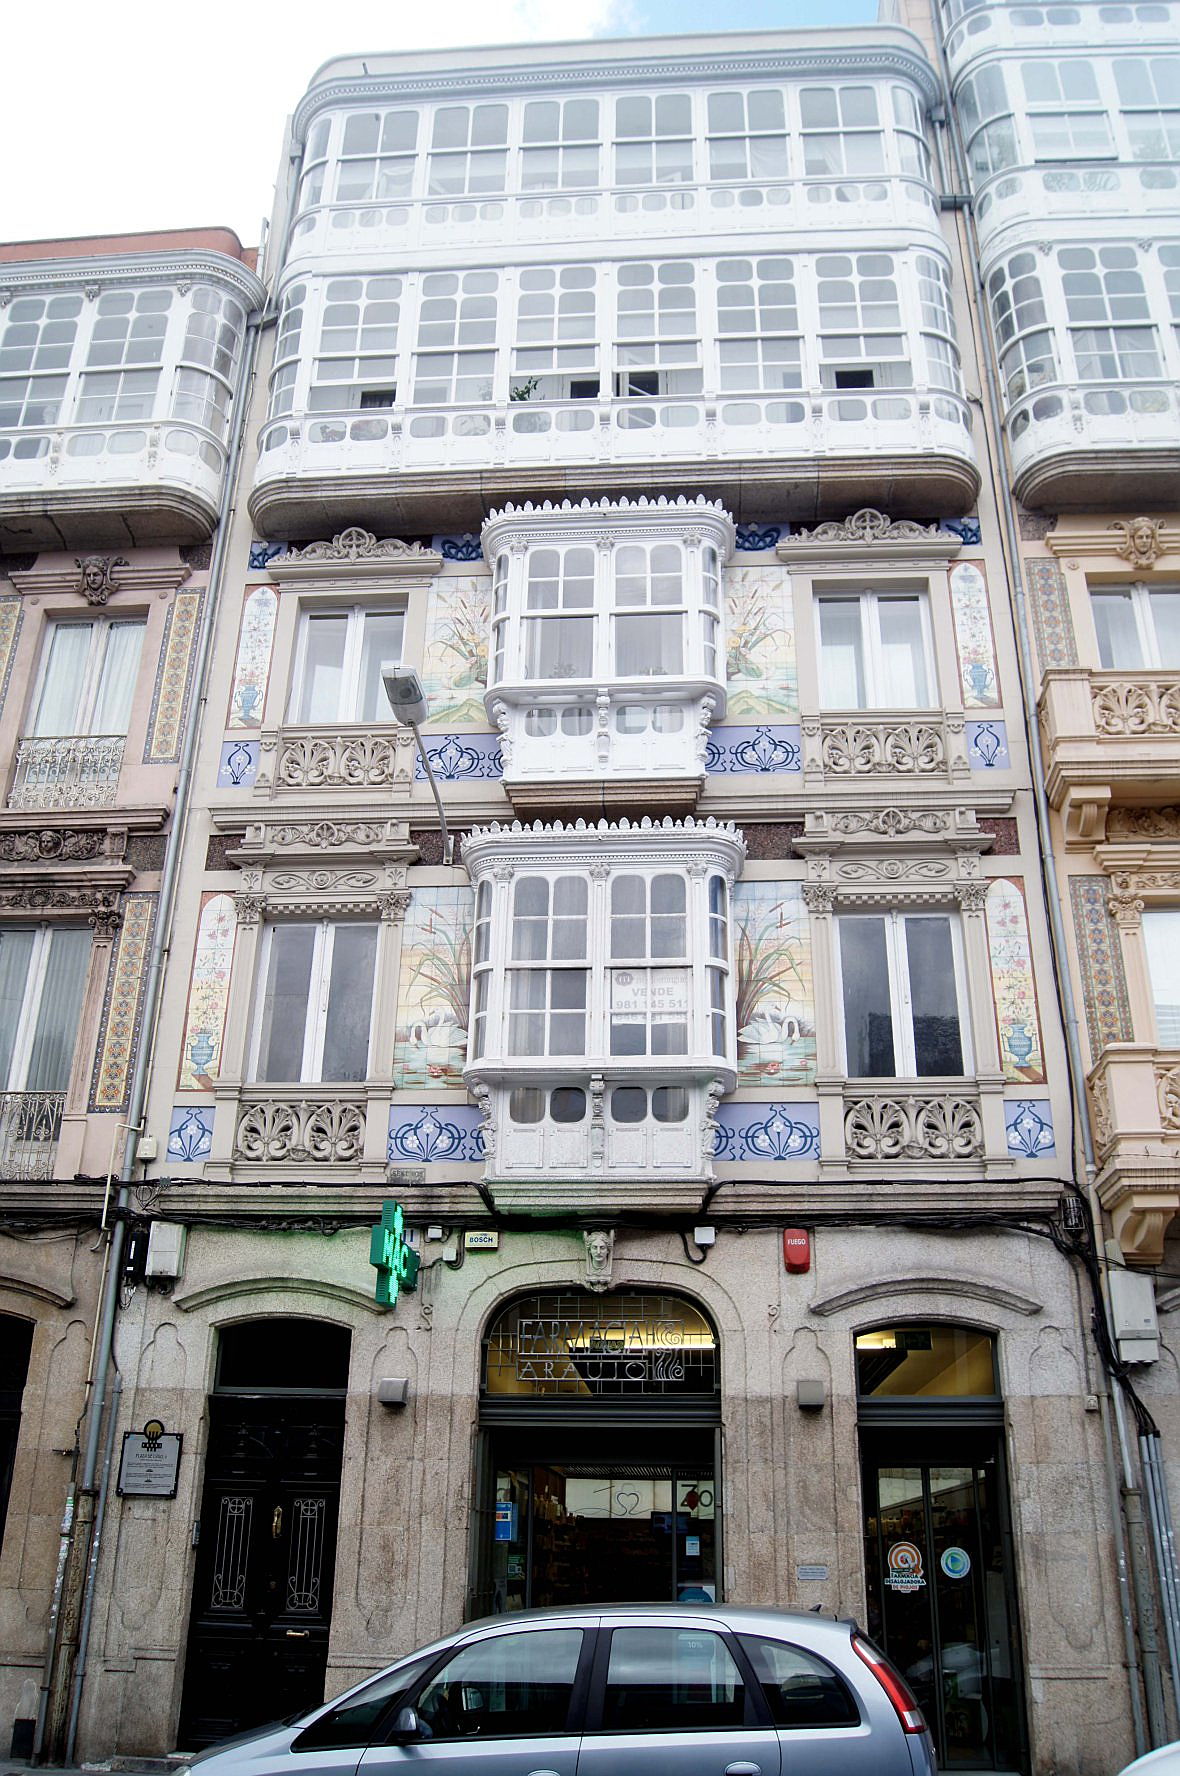  La Coruña, España
- 20-casa-cisnes-fachada plaza de lugo.jpg